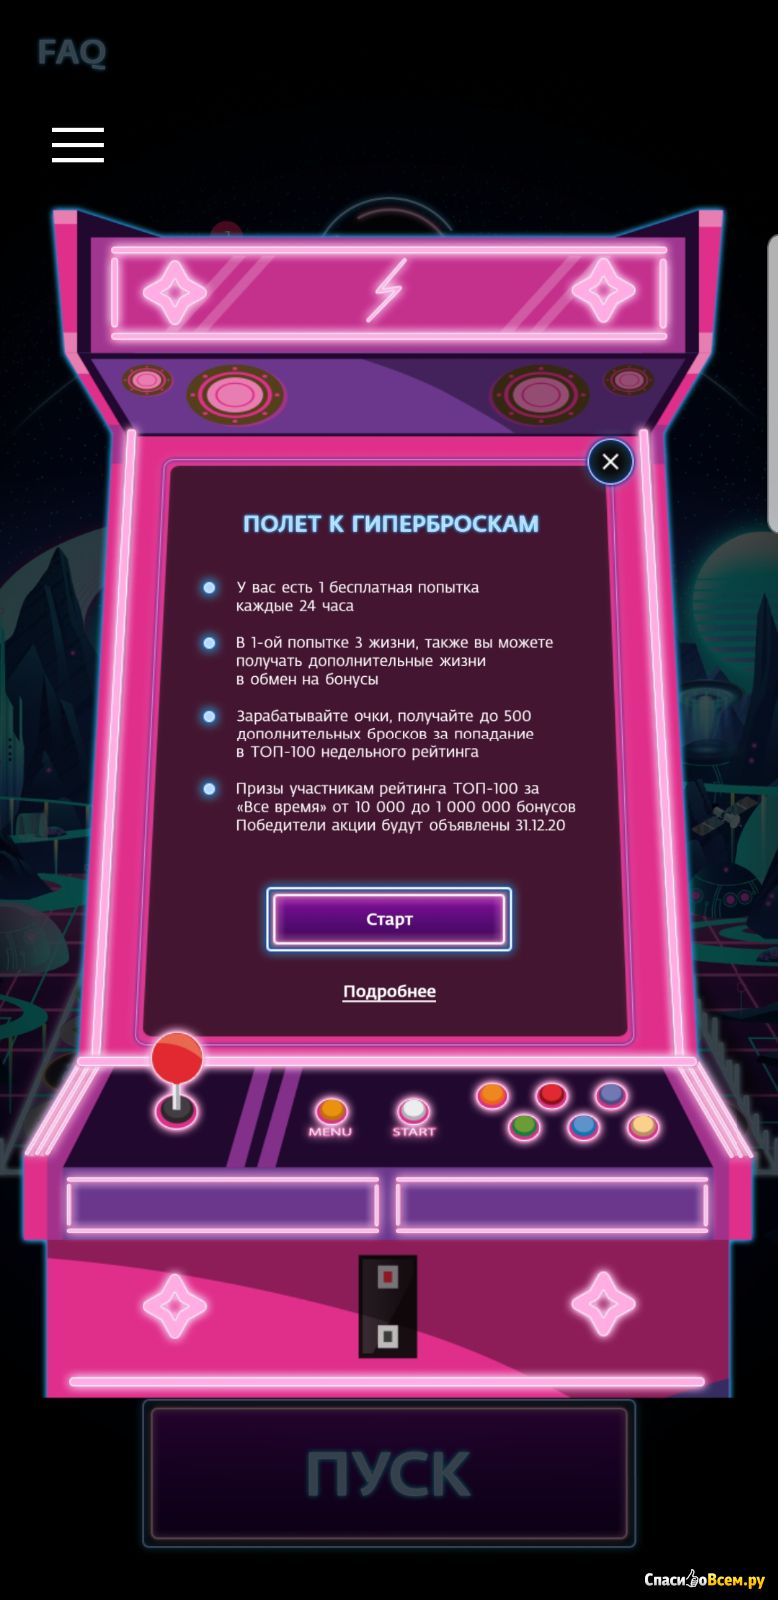 Игровые автоматы за бонусы спасибо вулкан игровые автоматы бесплатно 7vulcan vegas com